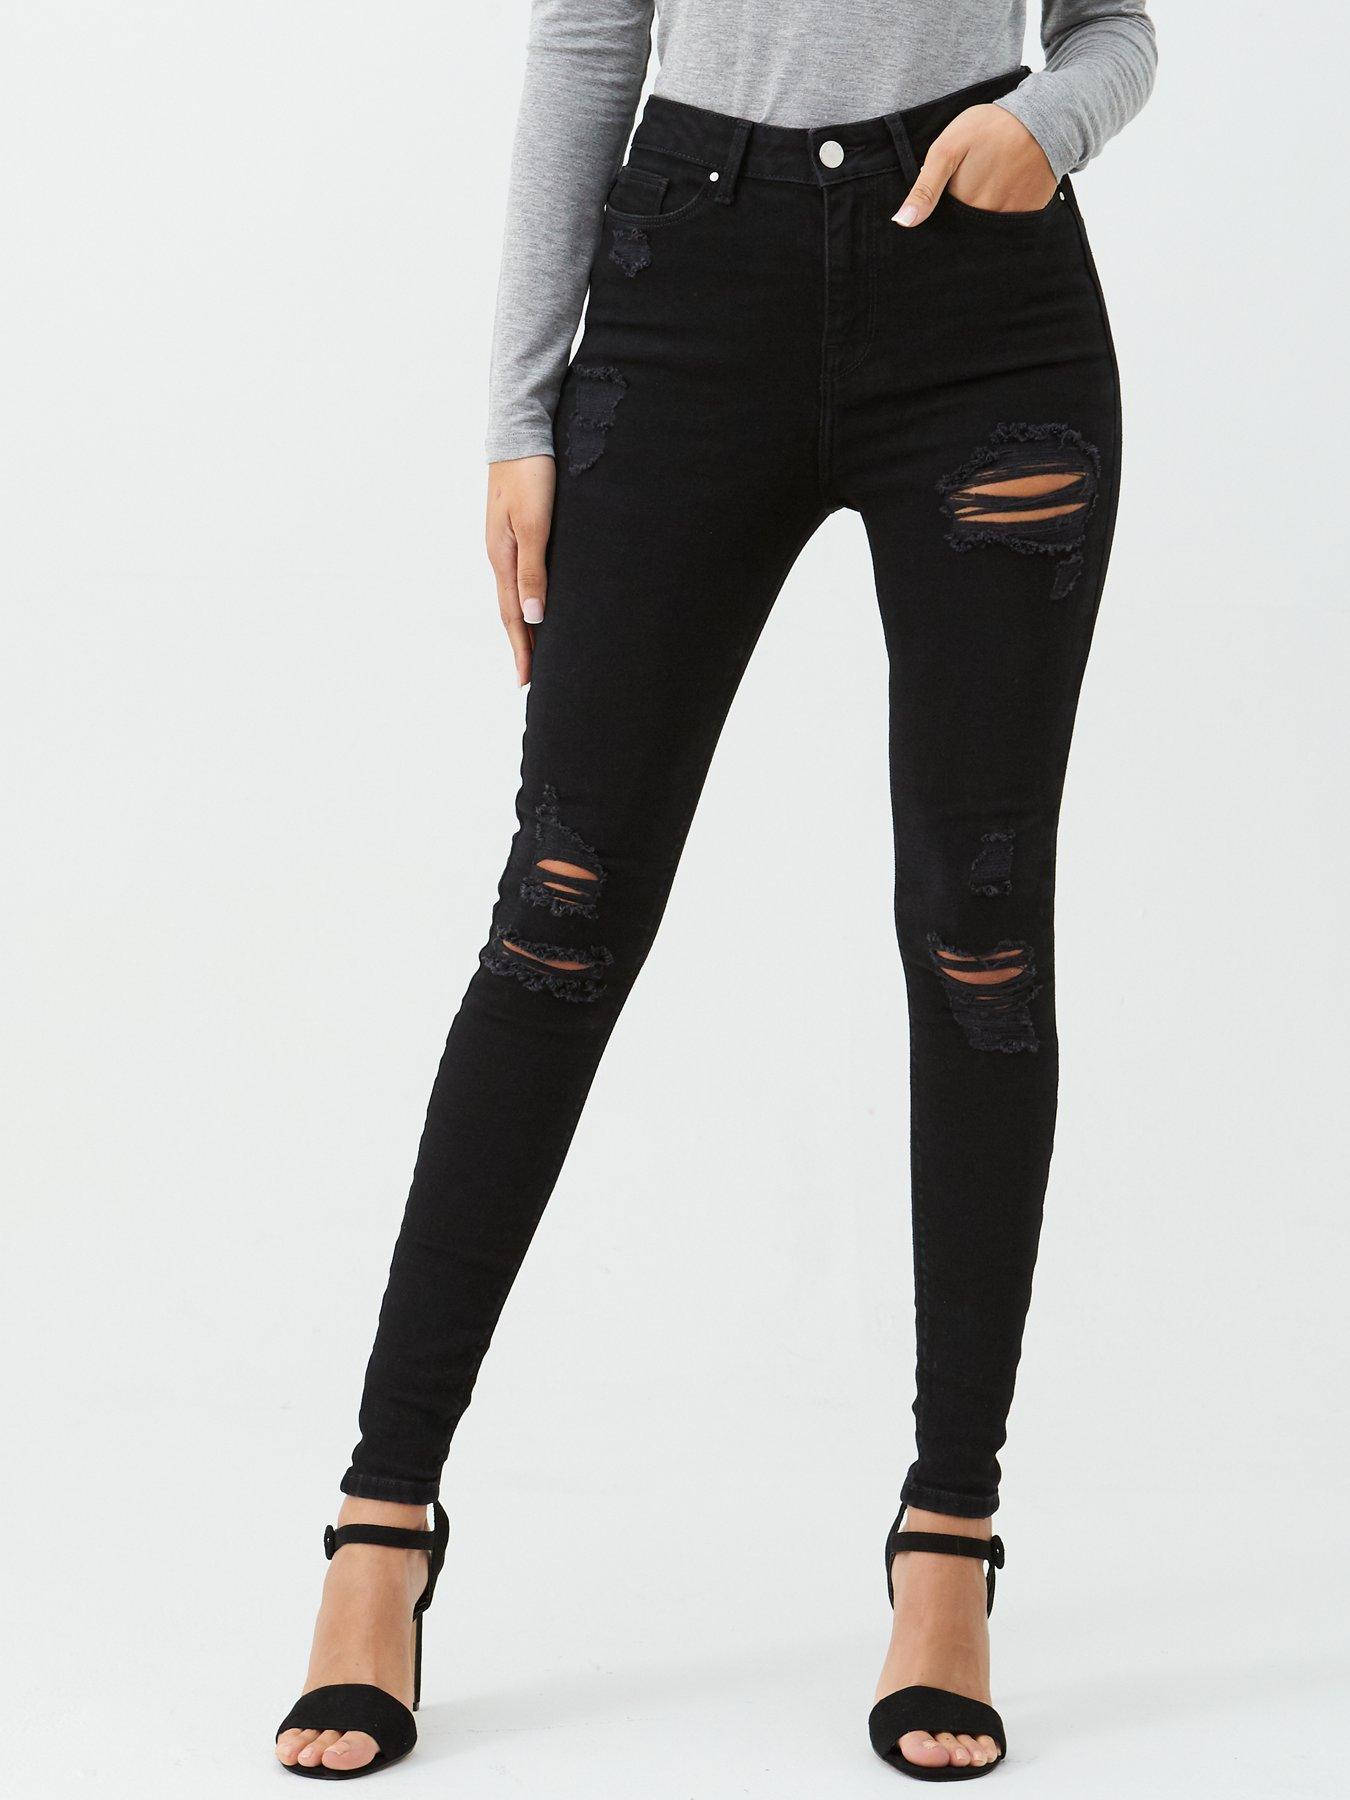 black skinny jeans uk